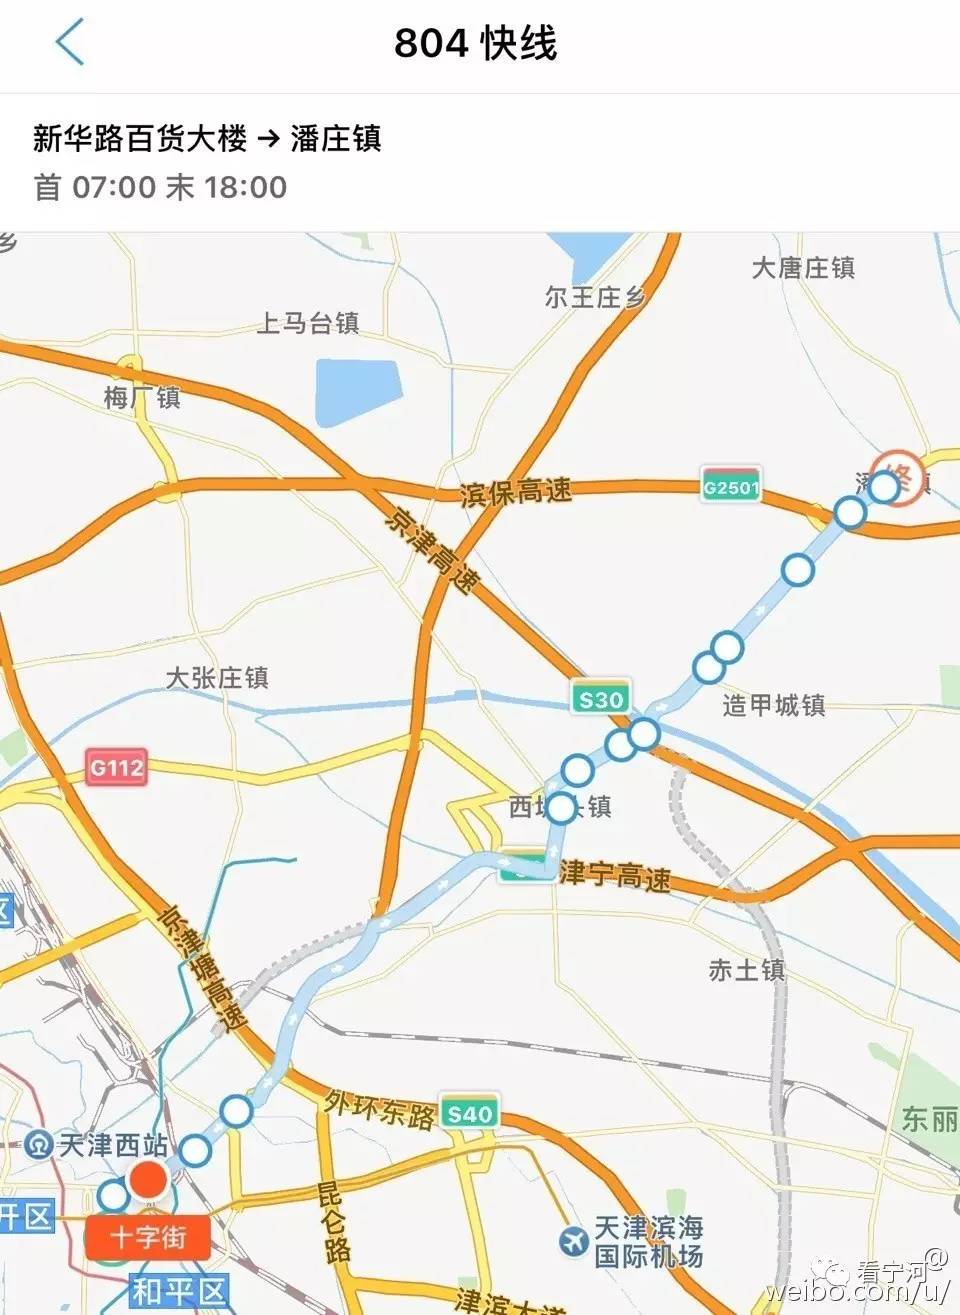 【宁河公交】804路快线增站